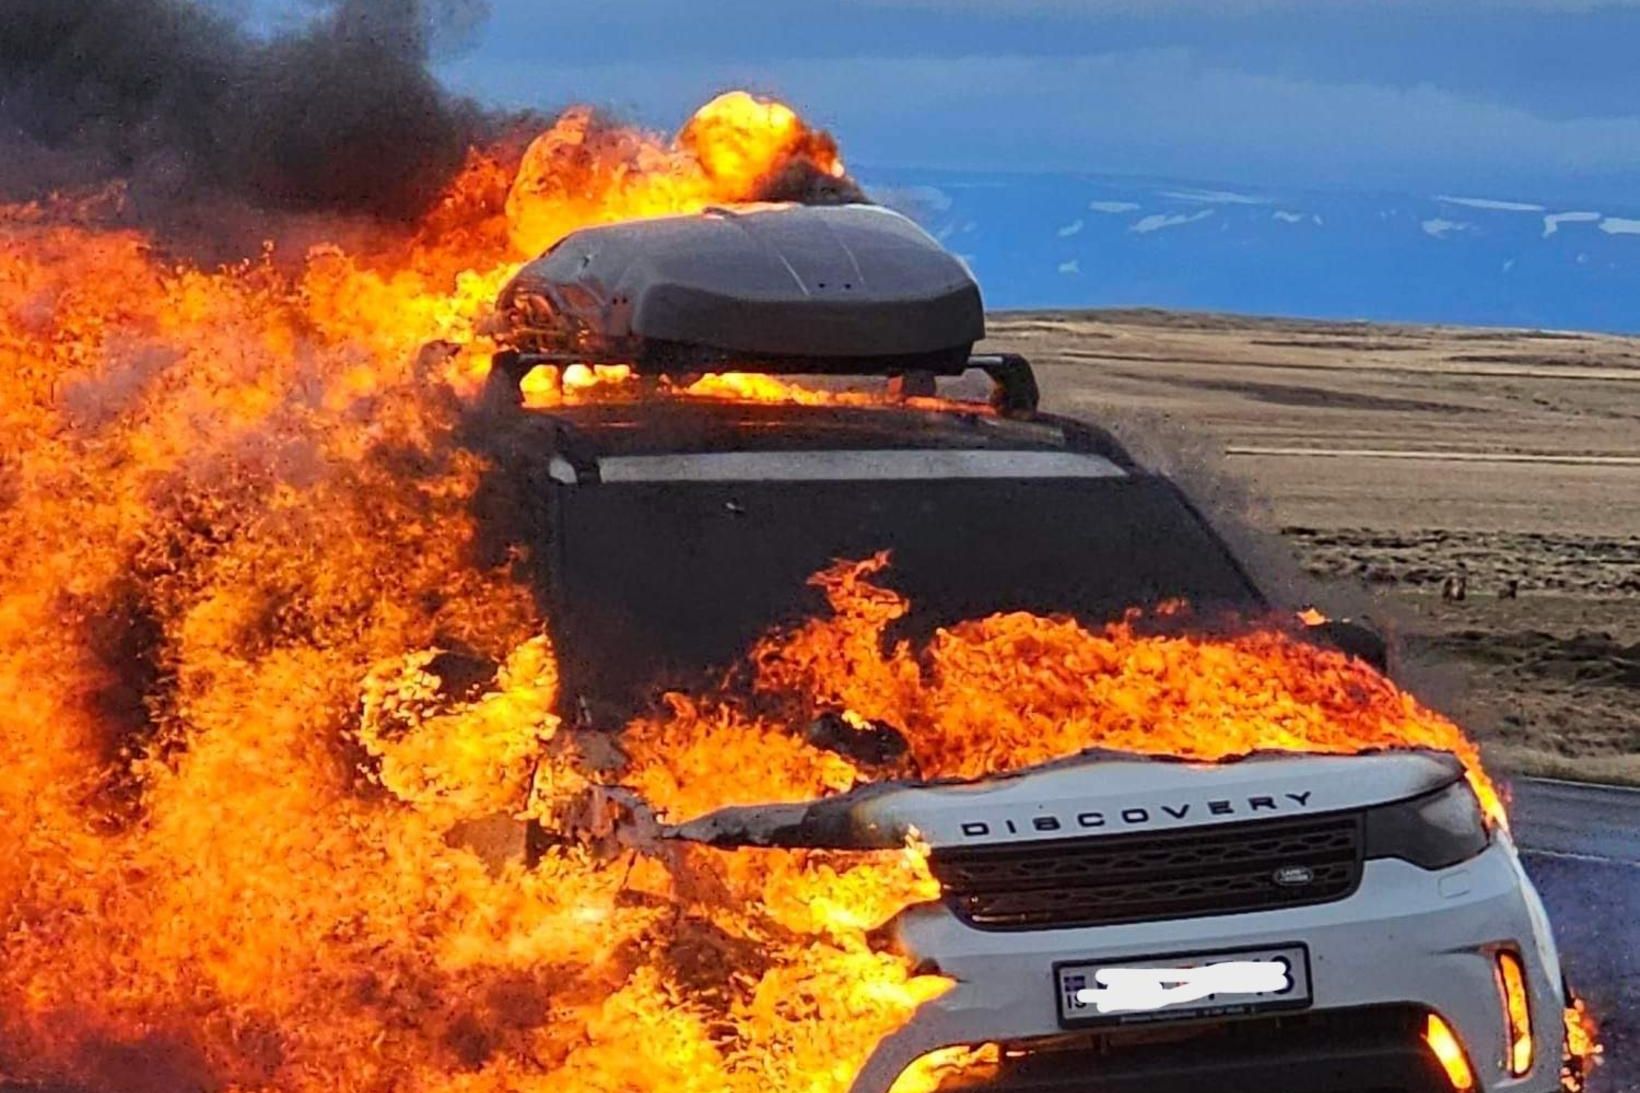 Karl S. Óskarsson sölustjóri Land Rover hjá BL umboði, segist …